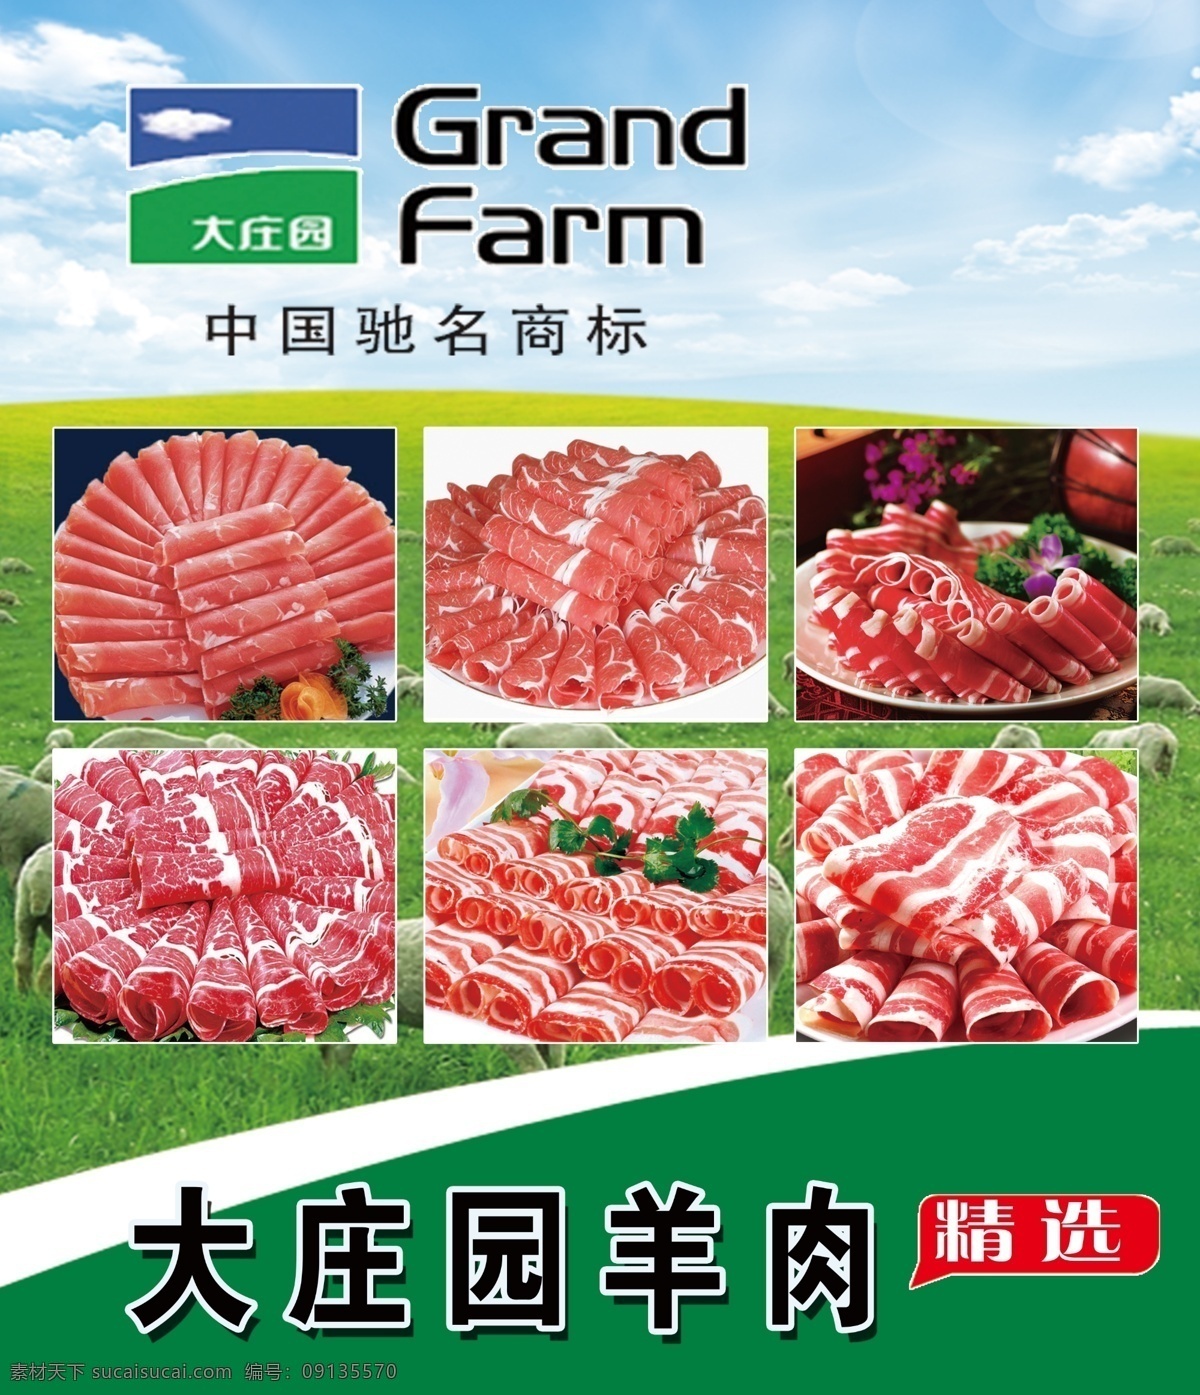 大庄园羊肉 喷绘布 大庄园 羊肉卷 羊肉 羊肉片 中国驰名商标 grand farm 火锅